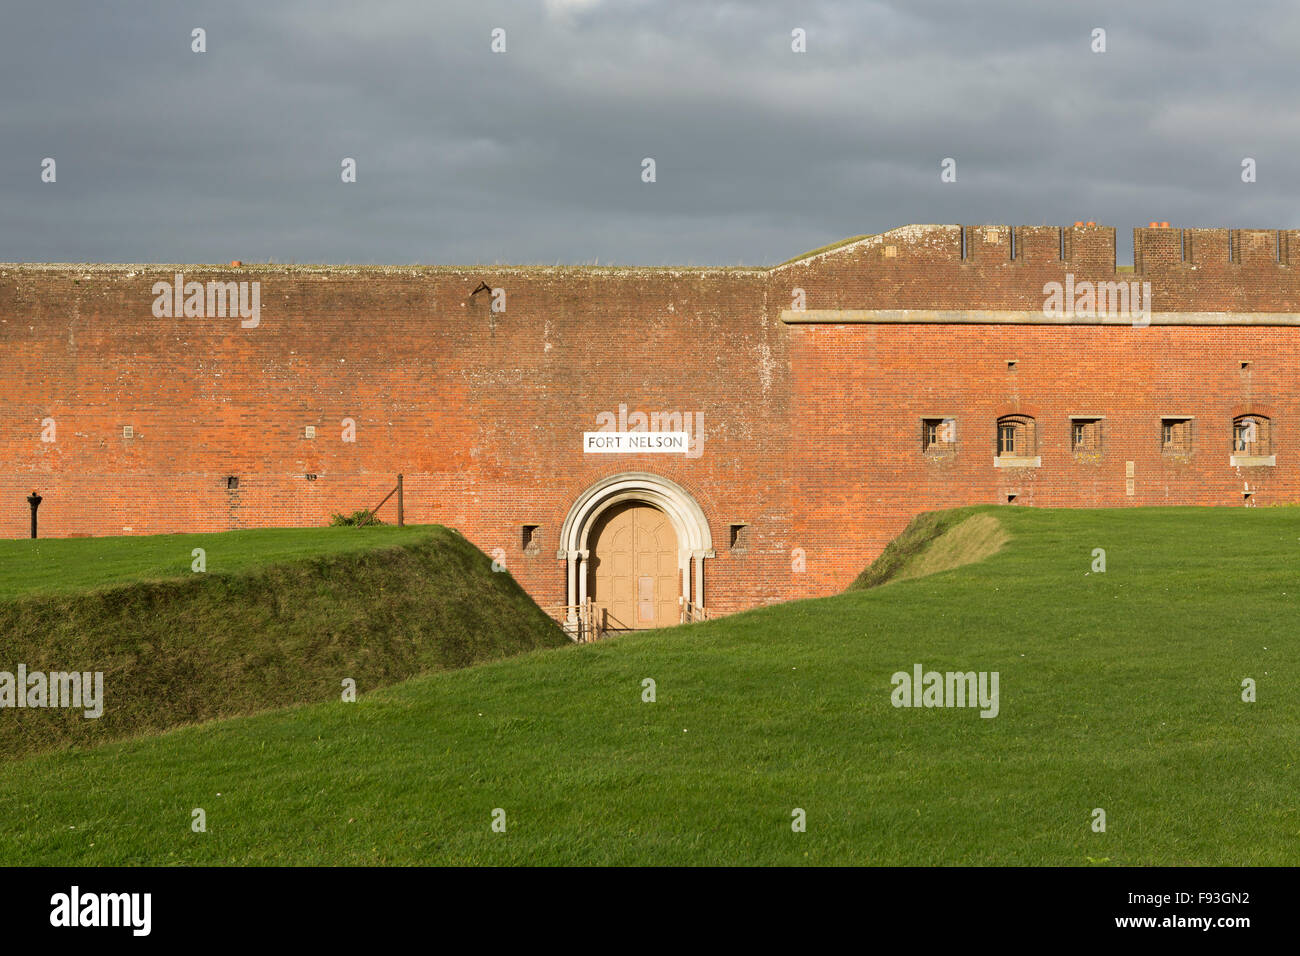 Fort Nelson accueil pour le Royal Armouries immobilier leur collection de l'artillerie. Construit pour protéger les terres de Portsmouth attaque. Banque D'Images